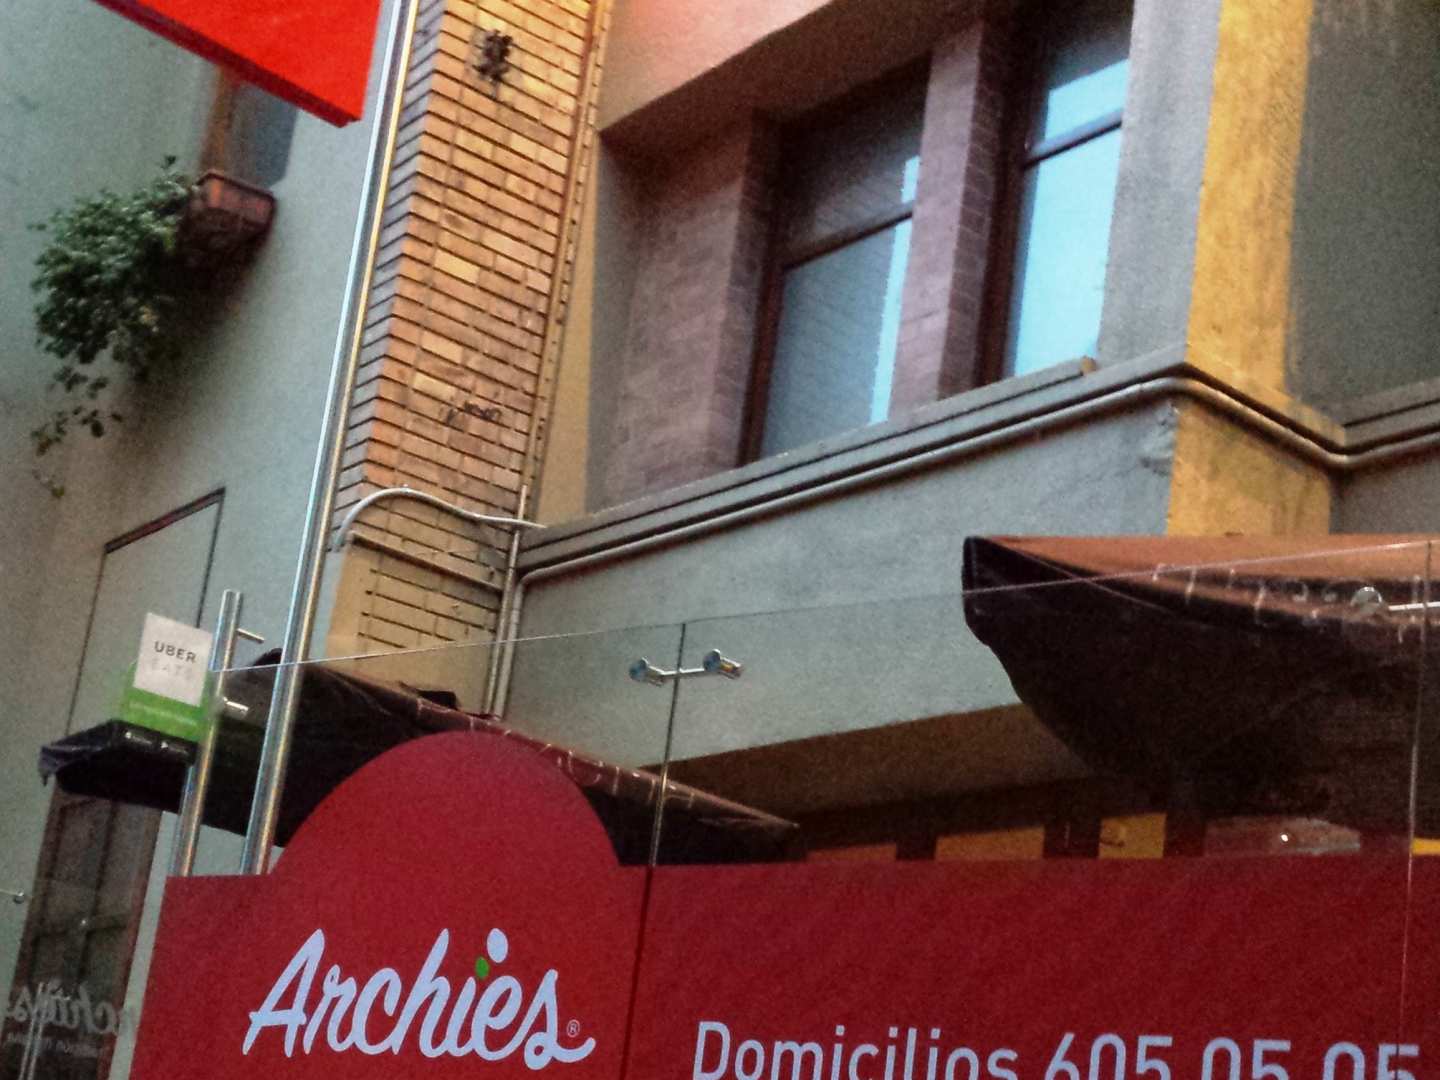 Archie's (Rosales)